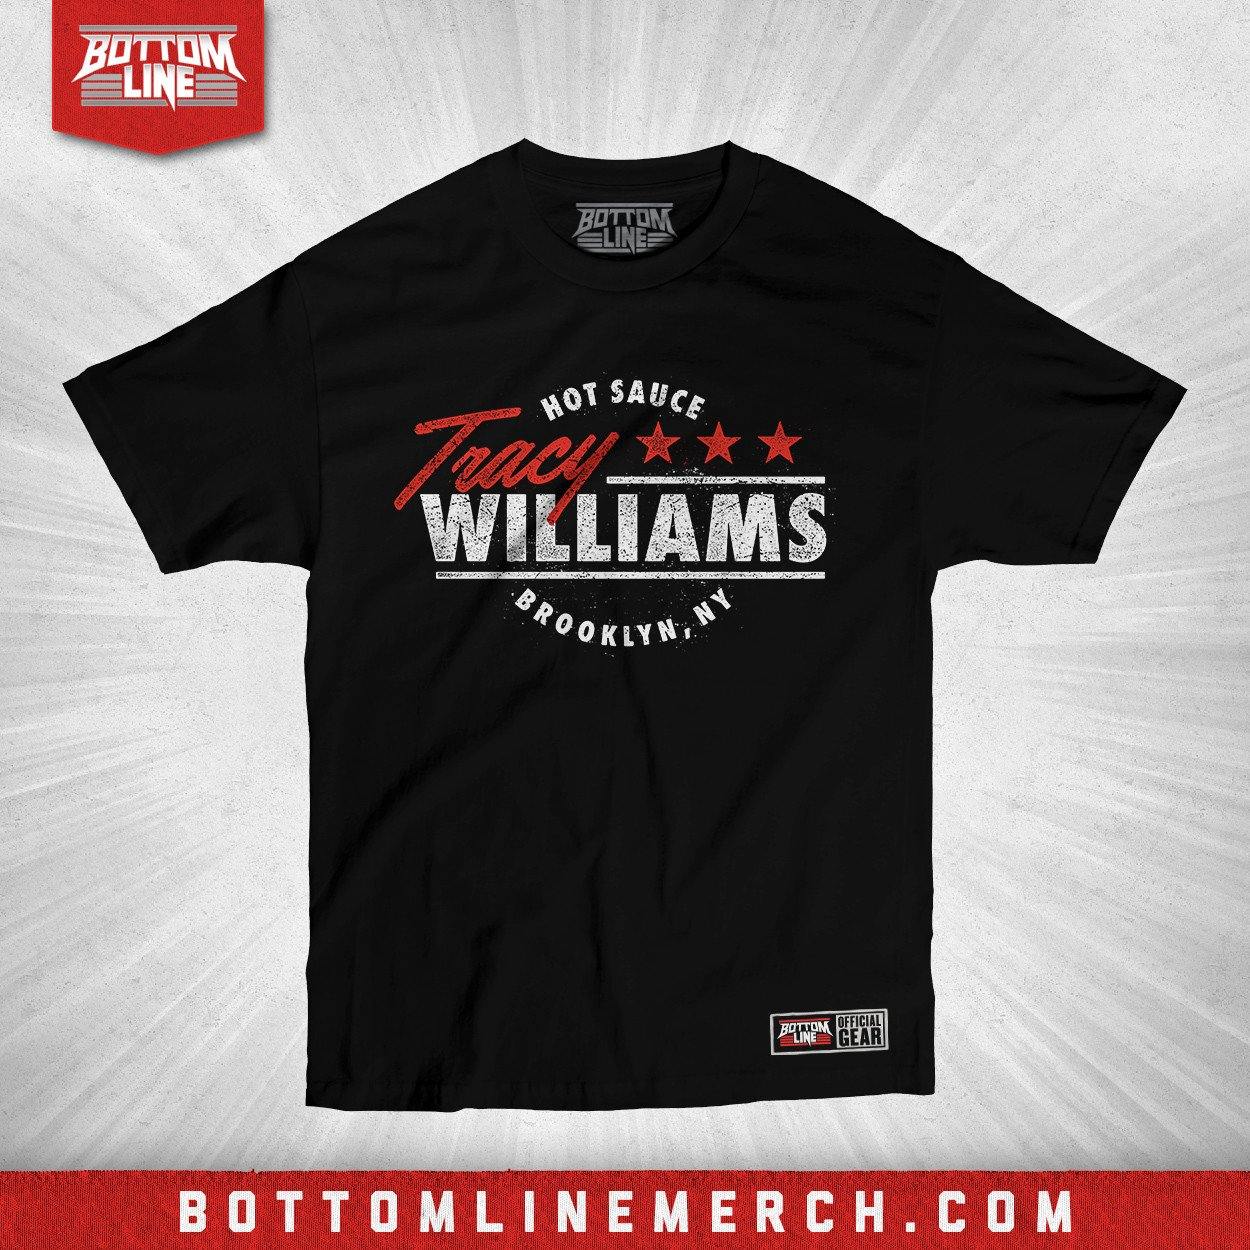 Buy Now – Tracy Williams "Hot Sauce Presidential" Shirt – Wrestler & Wrestling Merch – Bottom Line